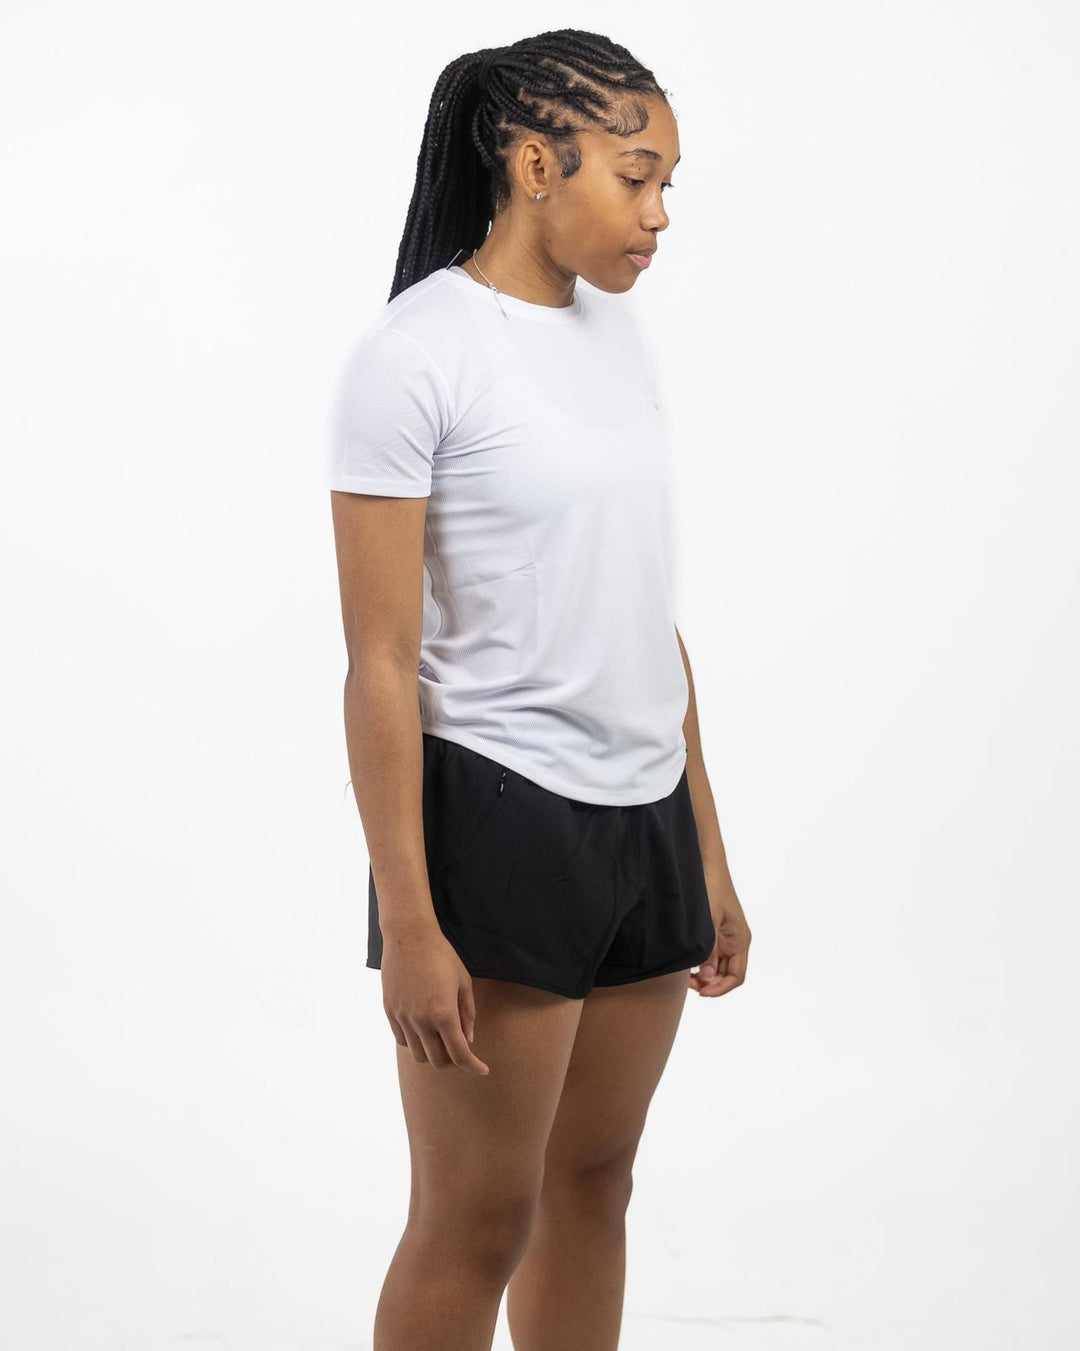 Women’s runner shorts - Black